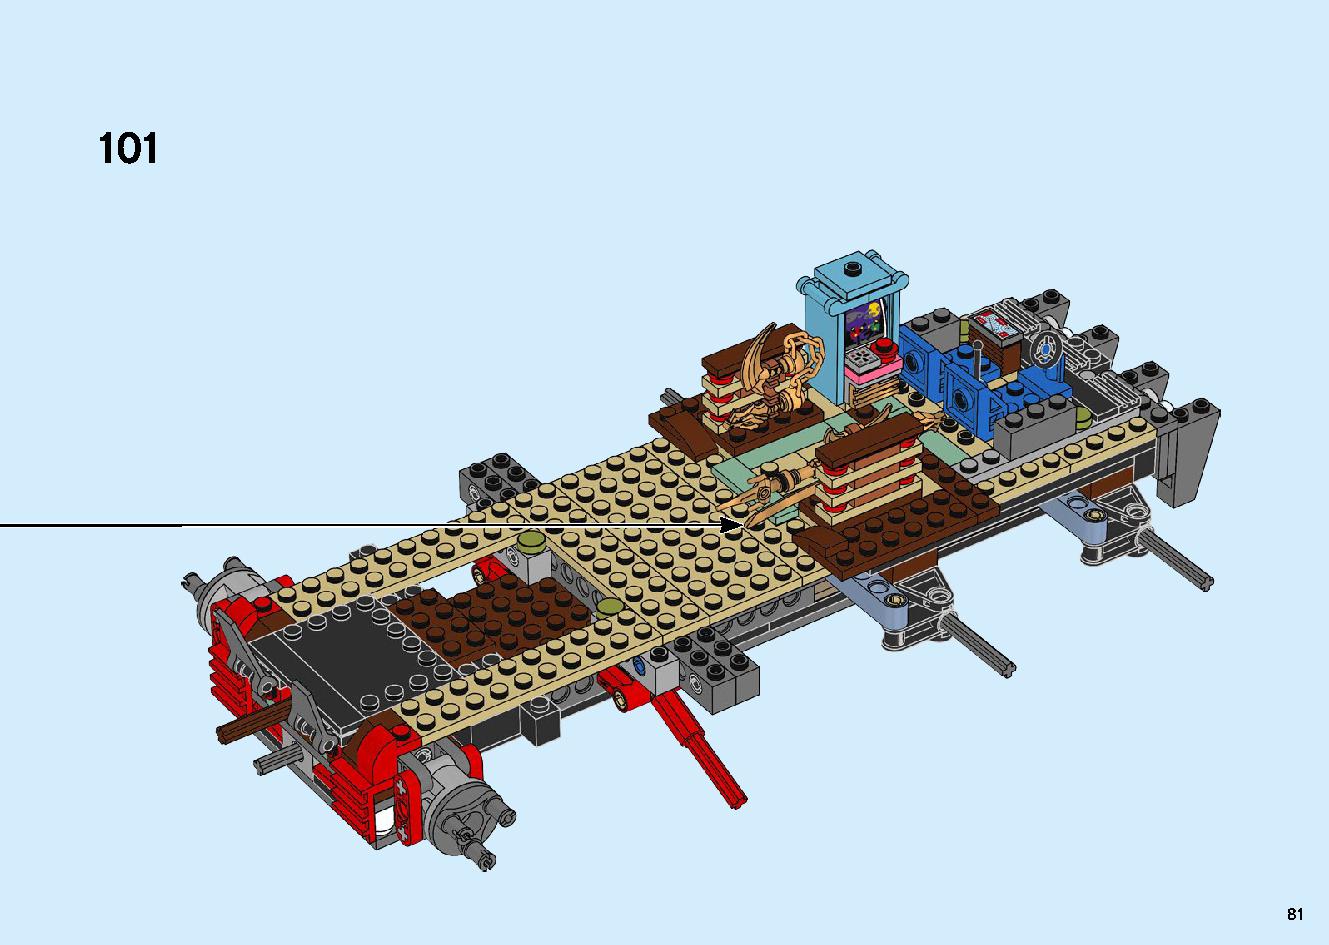 陸上戦艦バウンティ号 70677 レゴの商品情報 レゴの説明書・組立方法 81 page